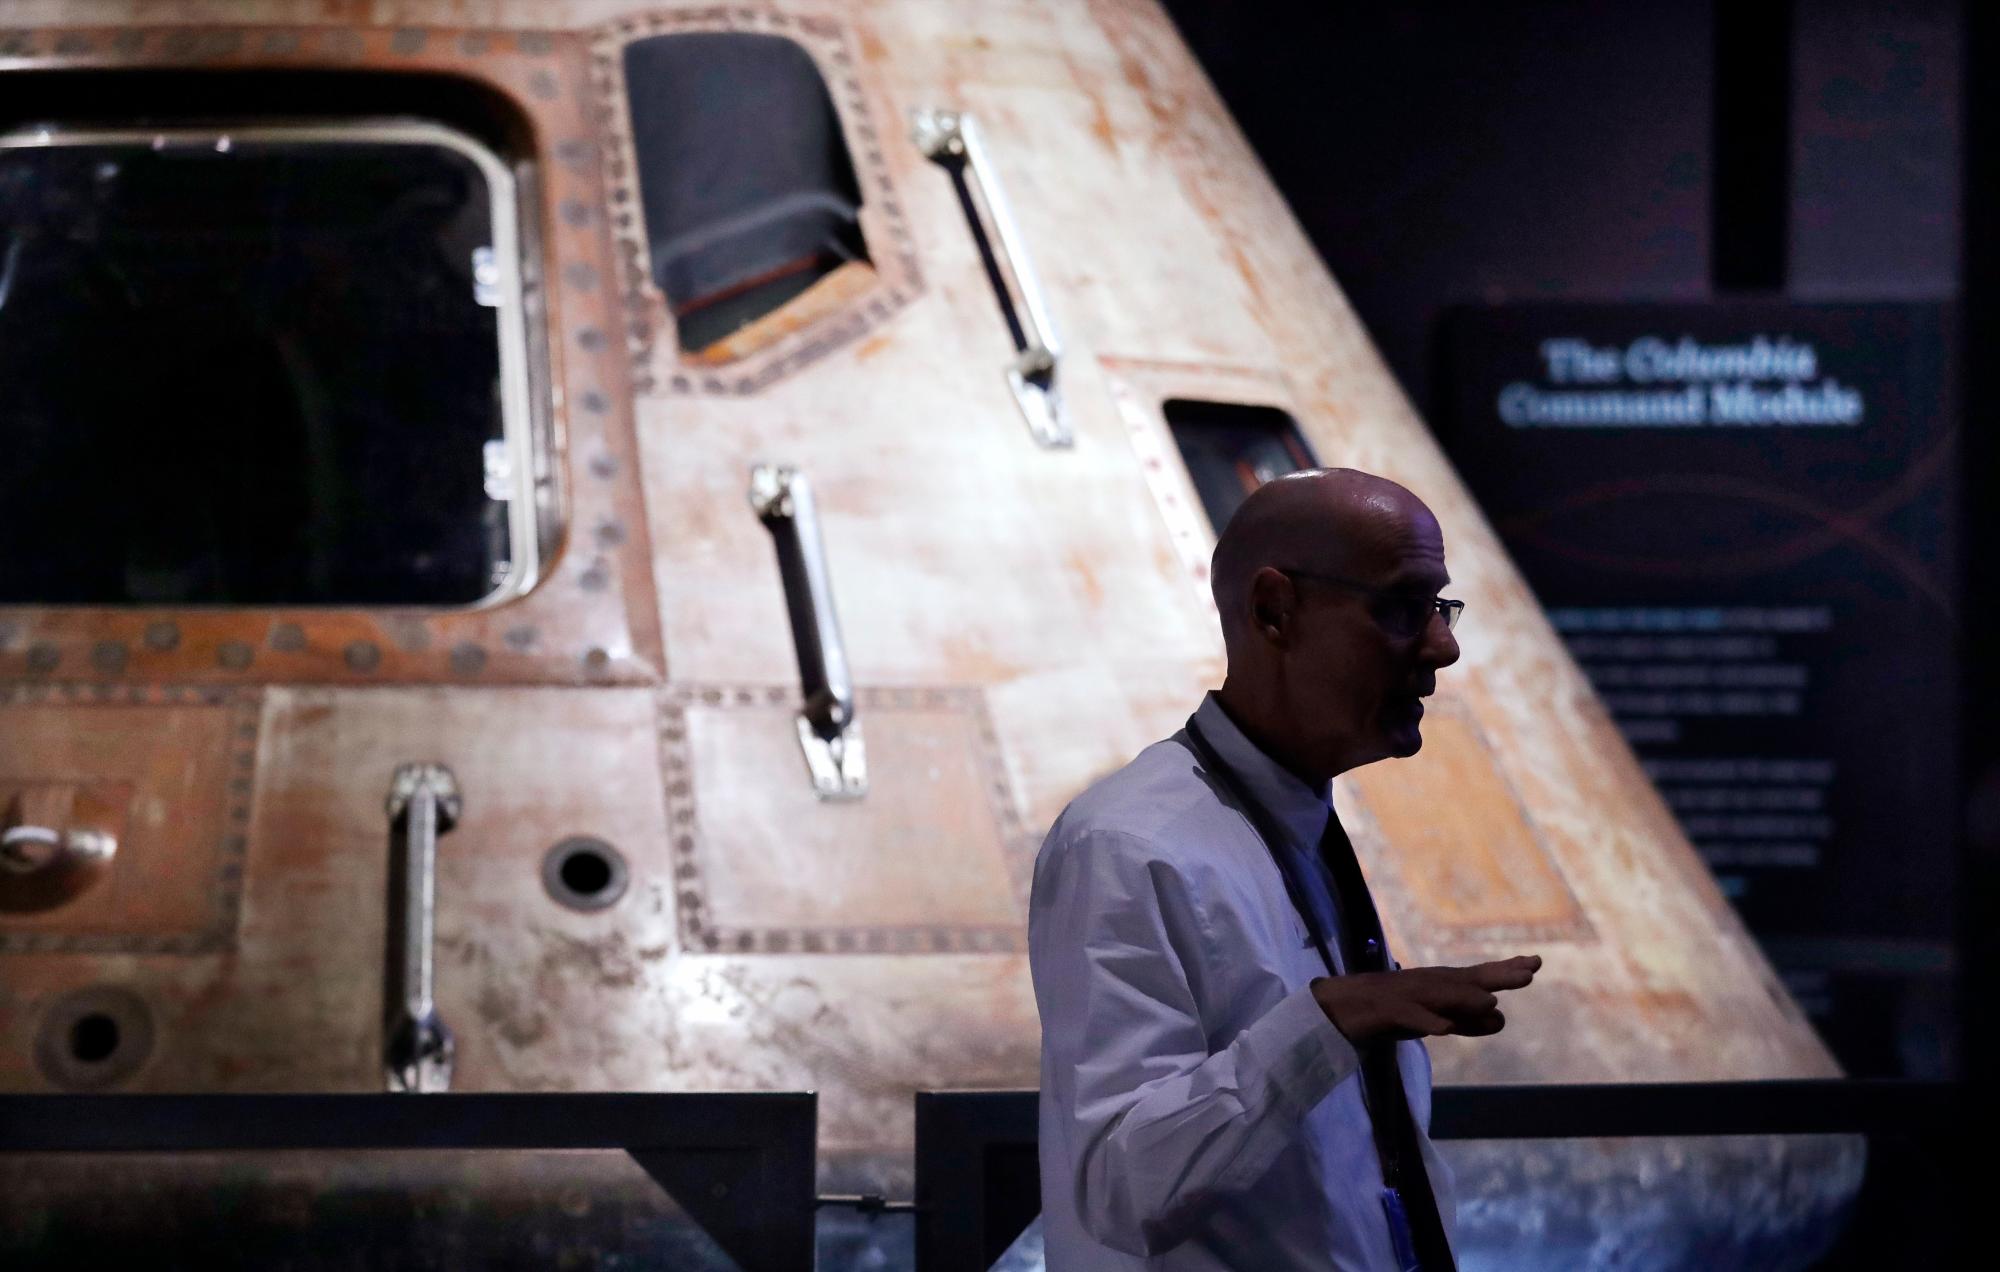 Ted Huetter, gerente principal de relaciones públicas del Museo de Vuelo, parado frente al módulo de comando de la NASA Apollo 11, Columbia, que se encuentra como la pieza central de Destination Moon: la exhibición de la misión Apollo 11 en el museo en Seattle. 